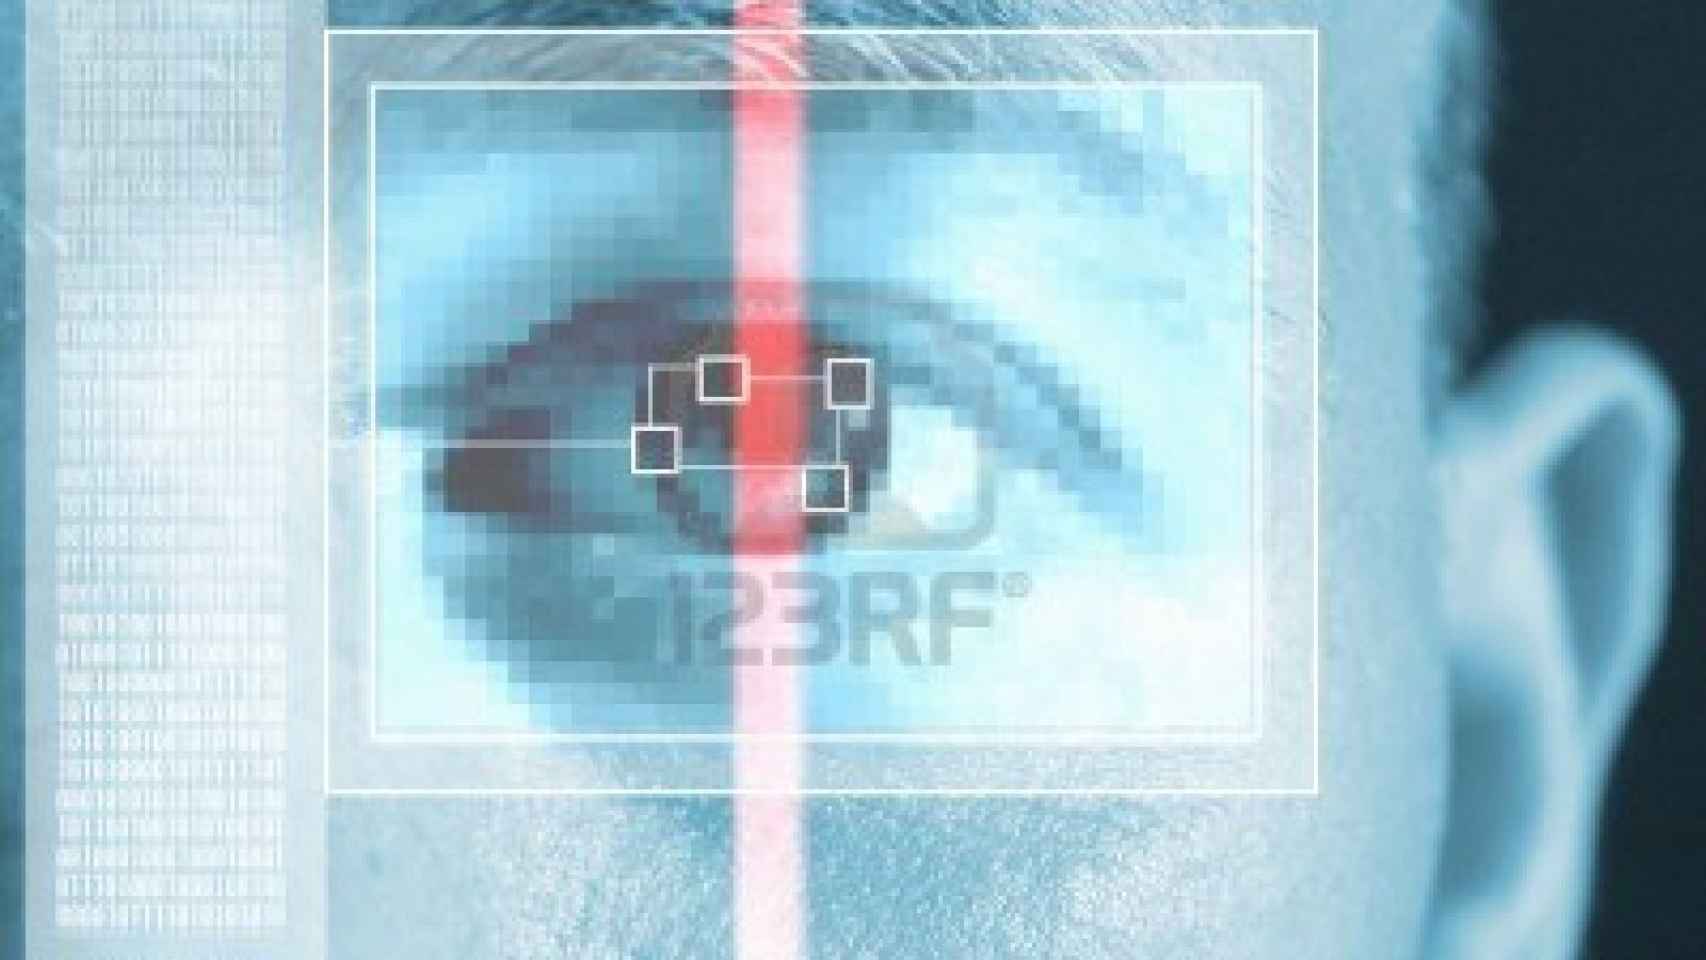 5777682-analisis-de-iris-para-la-seguridad-o-identificacion-ojo-con-la-interfaz-de-escaner-y-equipo